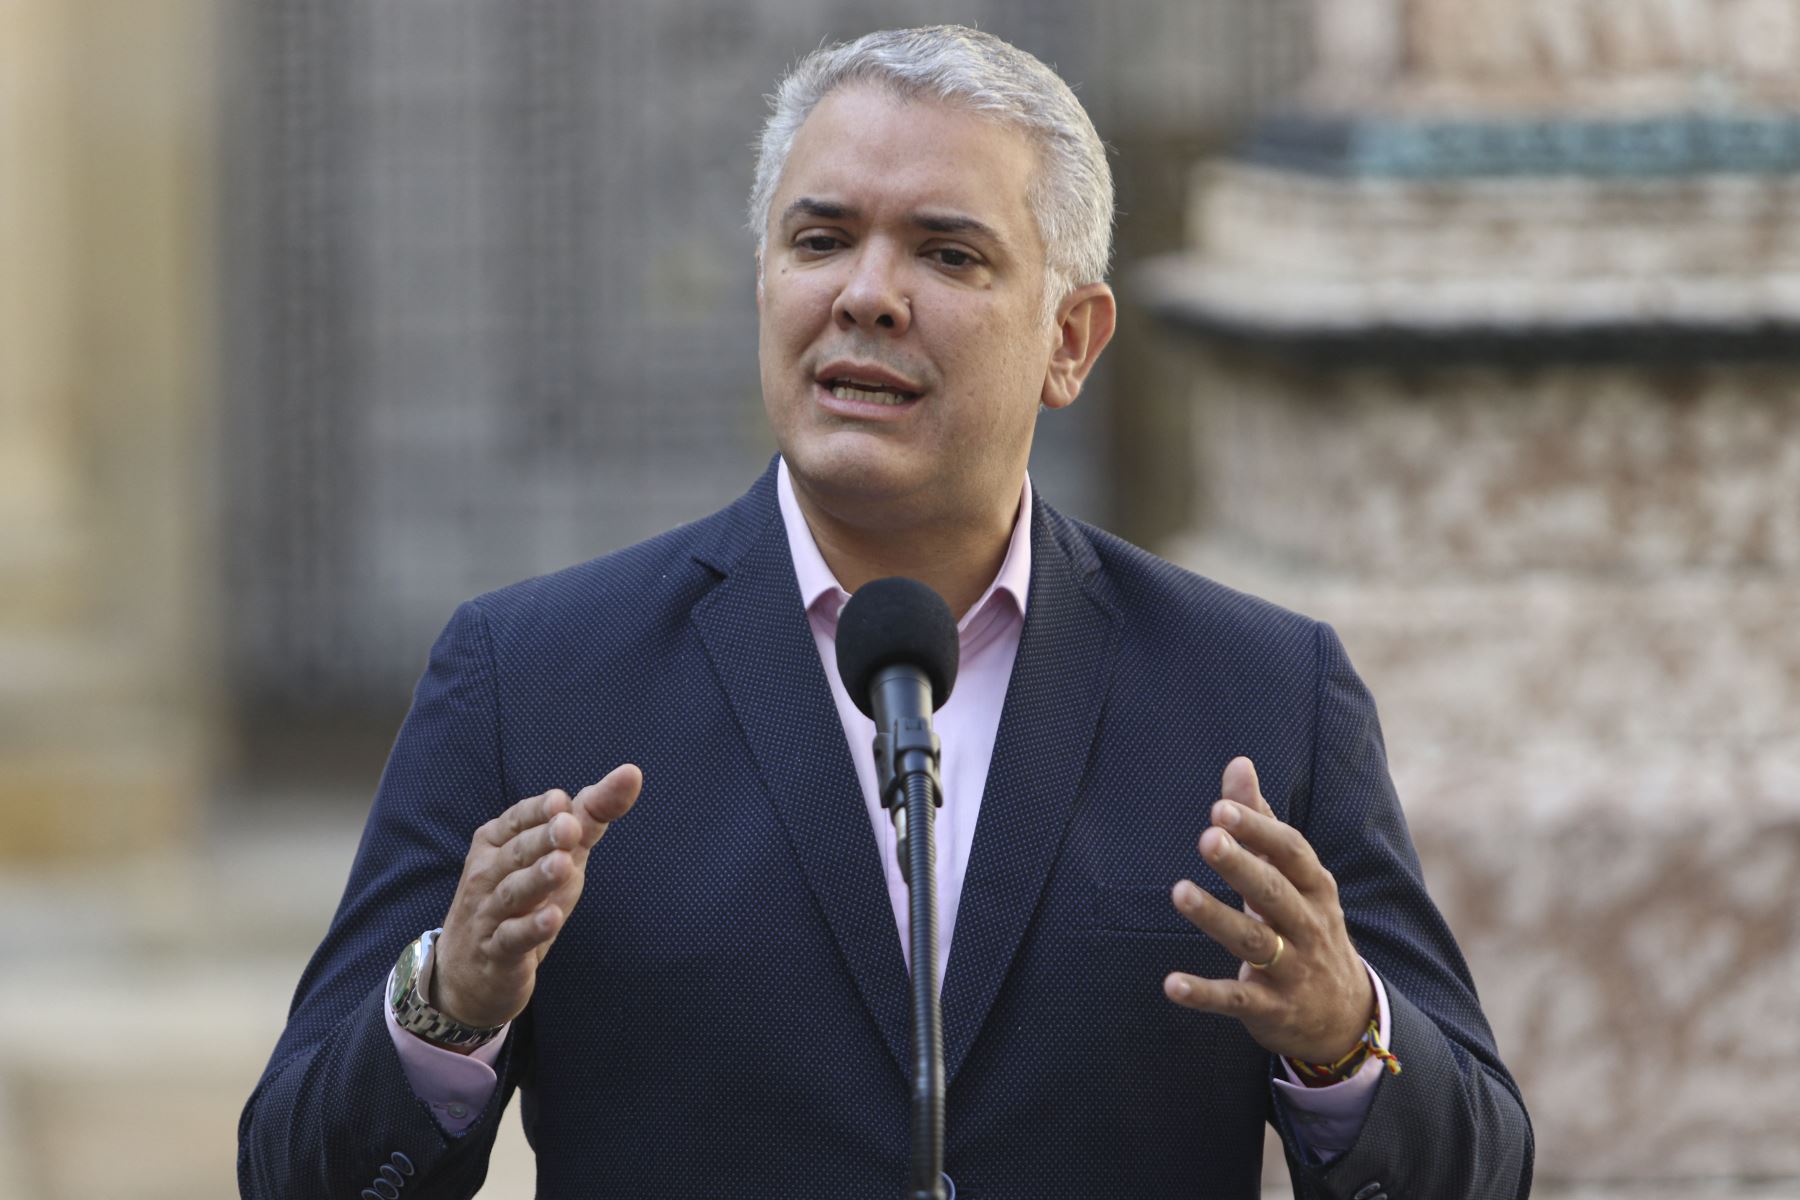 Elecciones en Colombia: Iván Duque dice que resultado será respetado